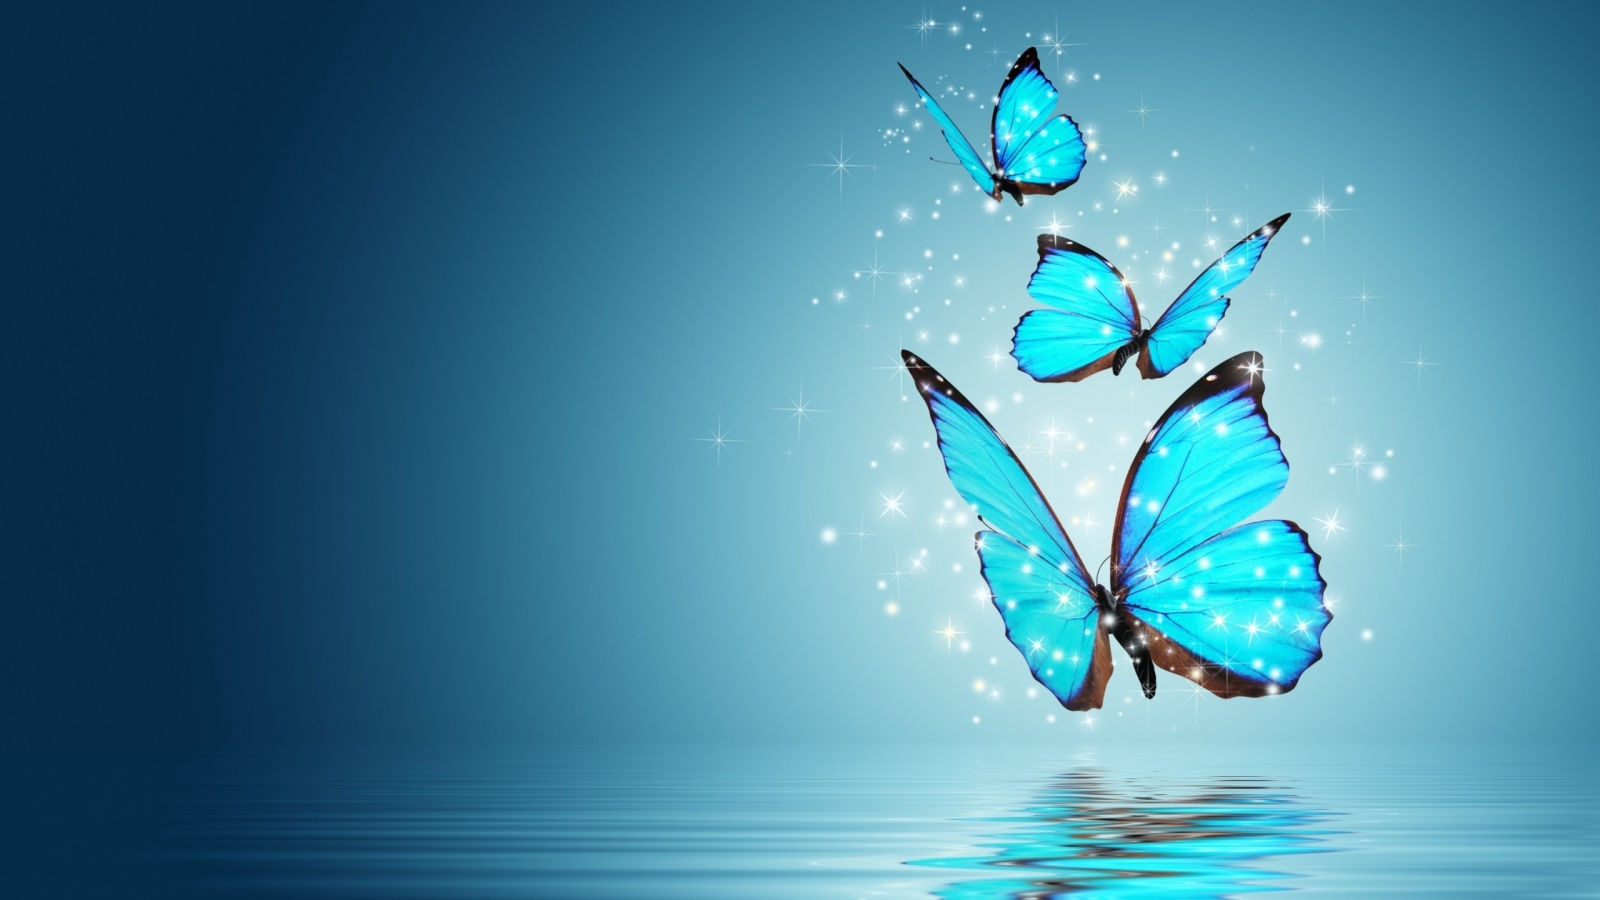 Blue Butterflies for 1600 x 900 HDTV resolution